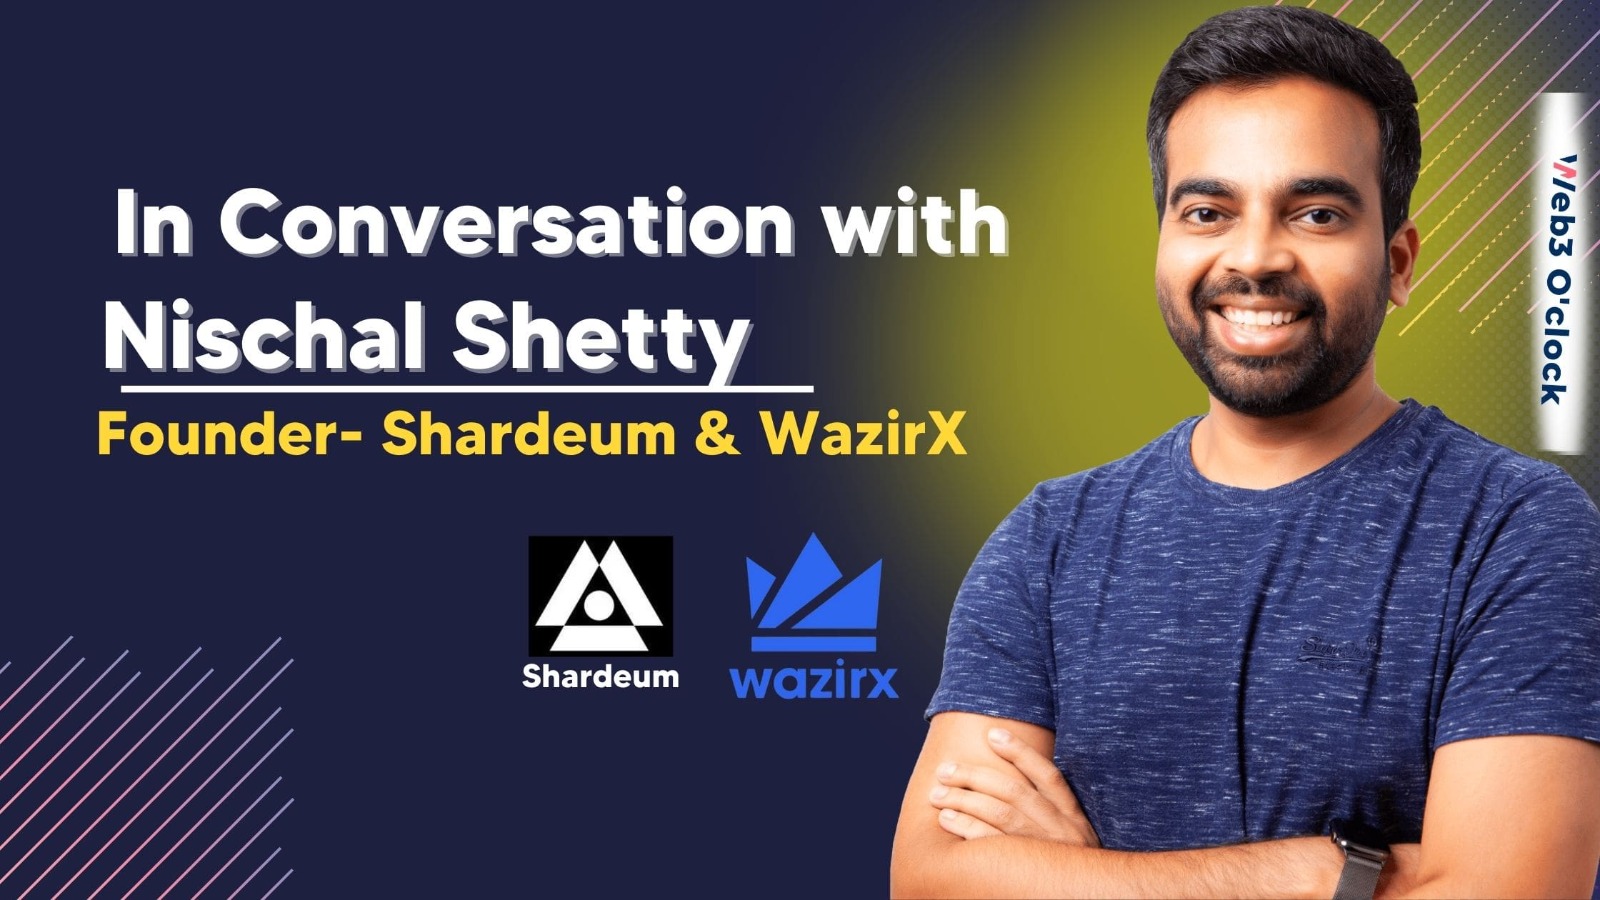 Nischal Shetty, Founder WazirX & Shardeum